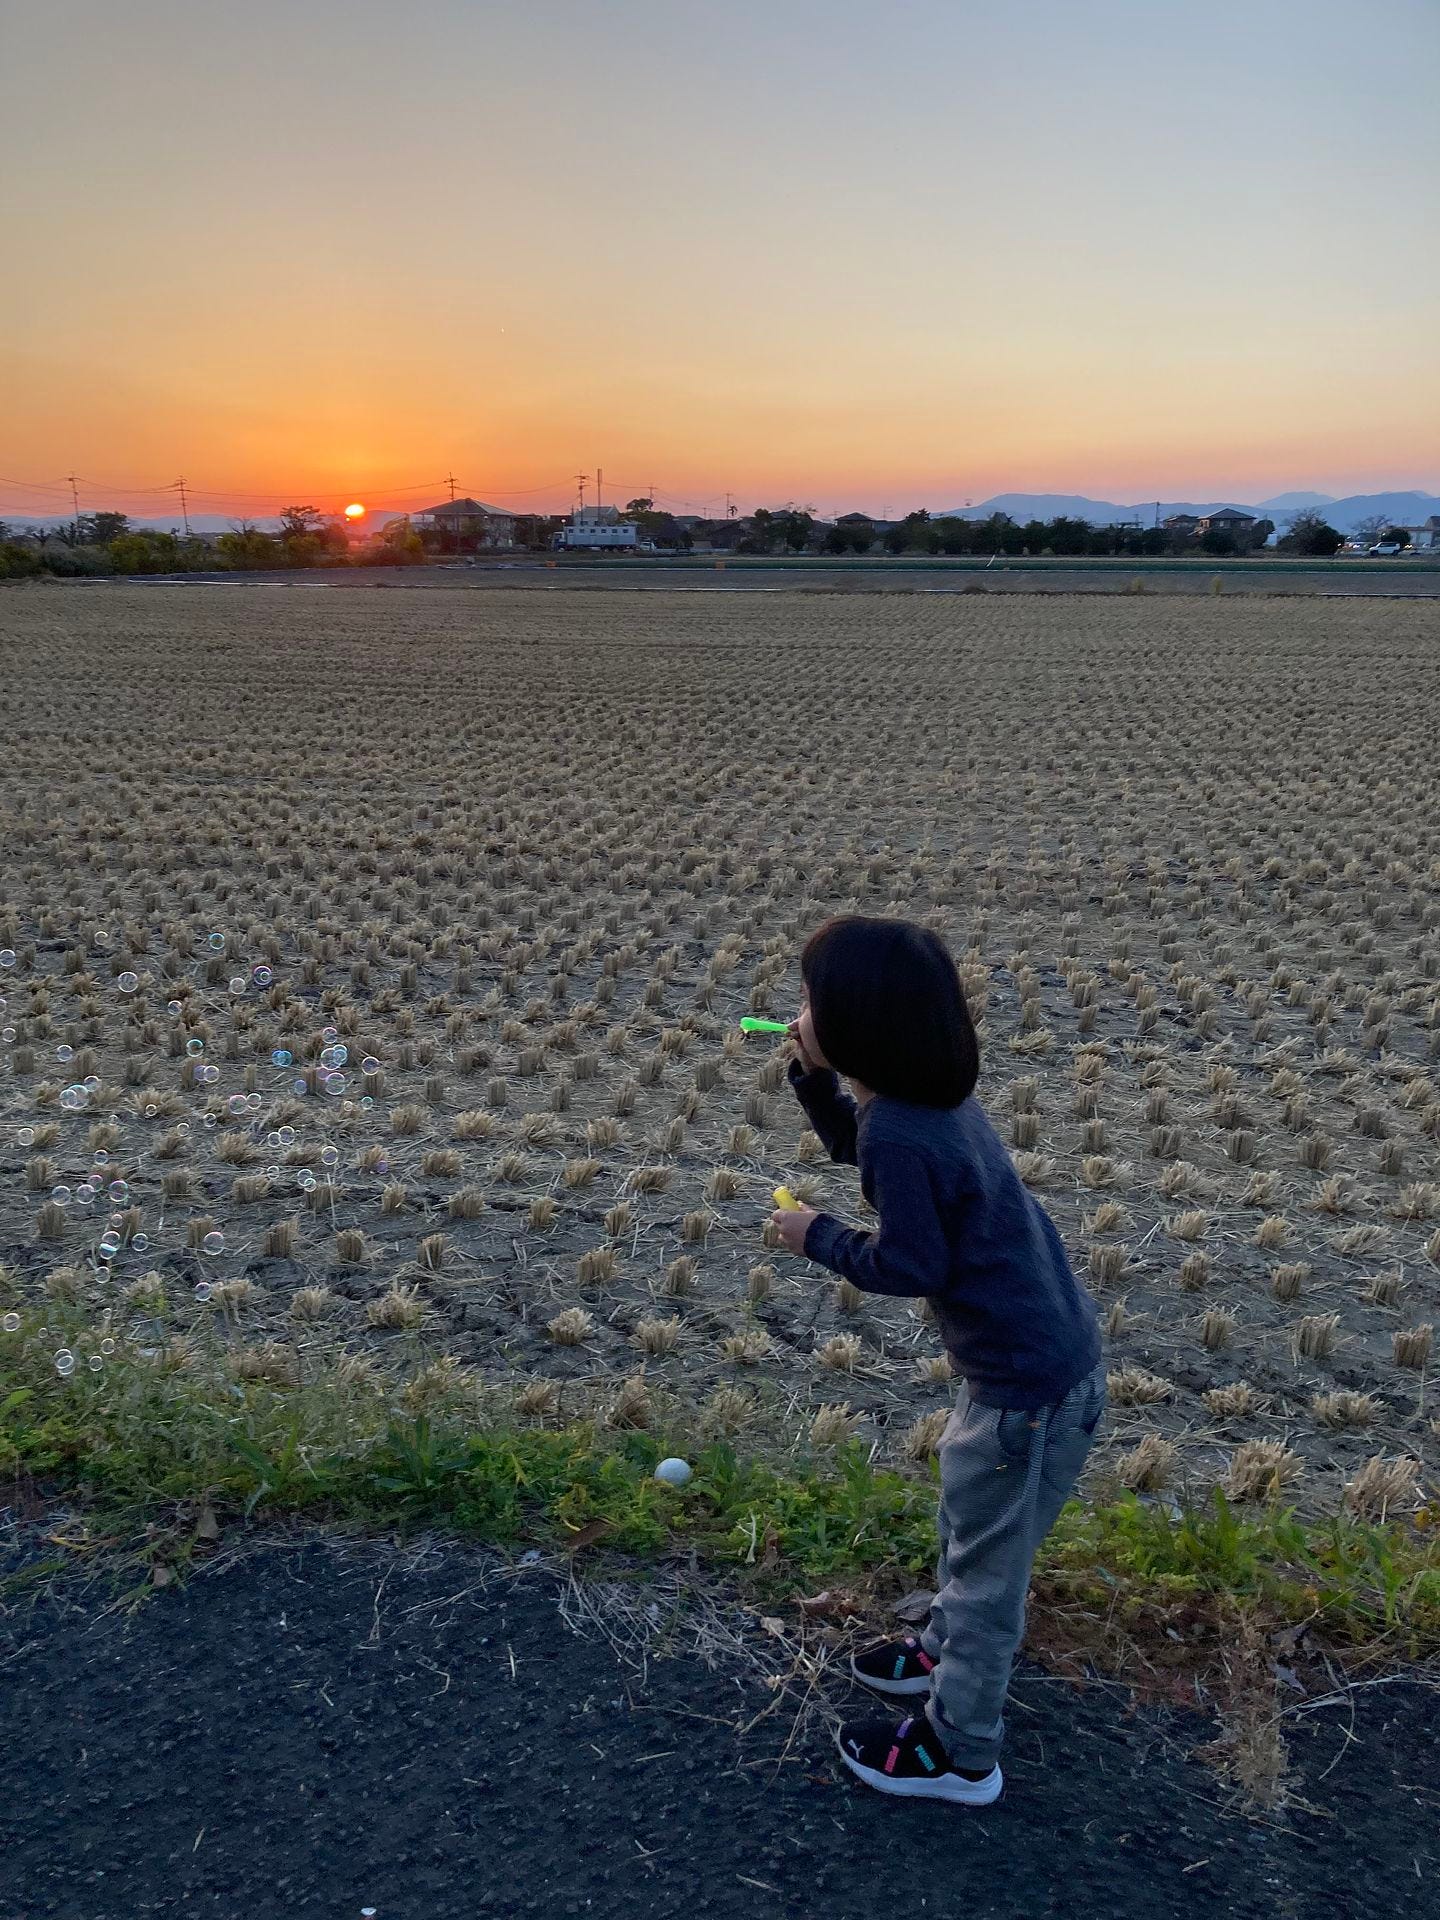 佐賀の夕焼け空にシャボン玉を飛ばす子供の写真